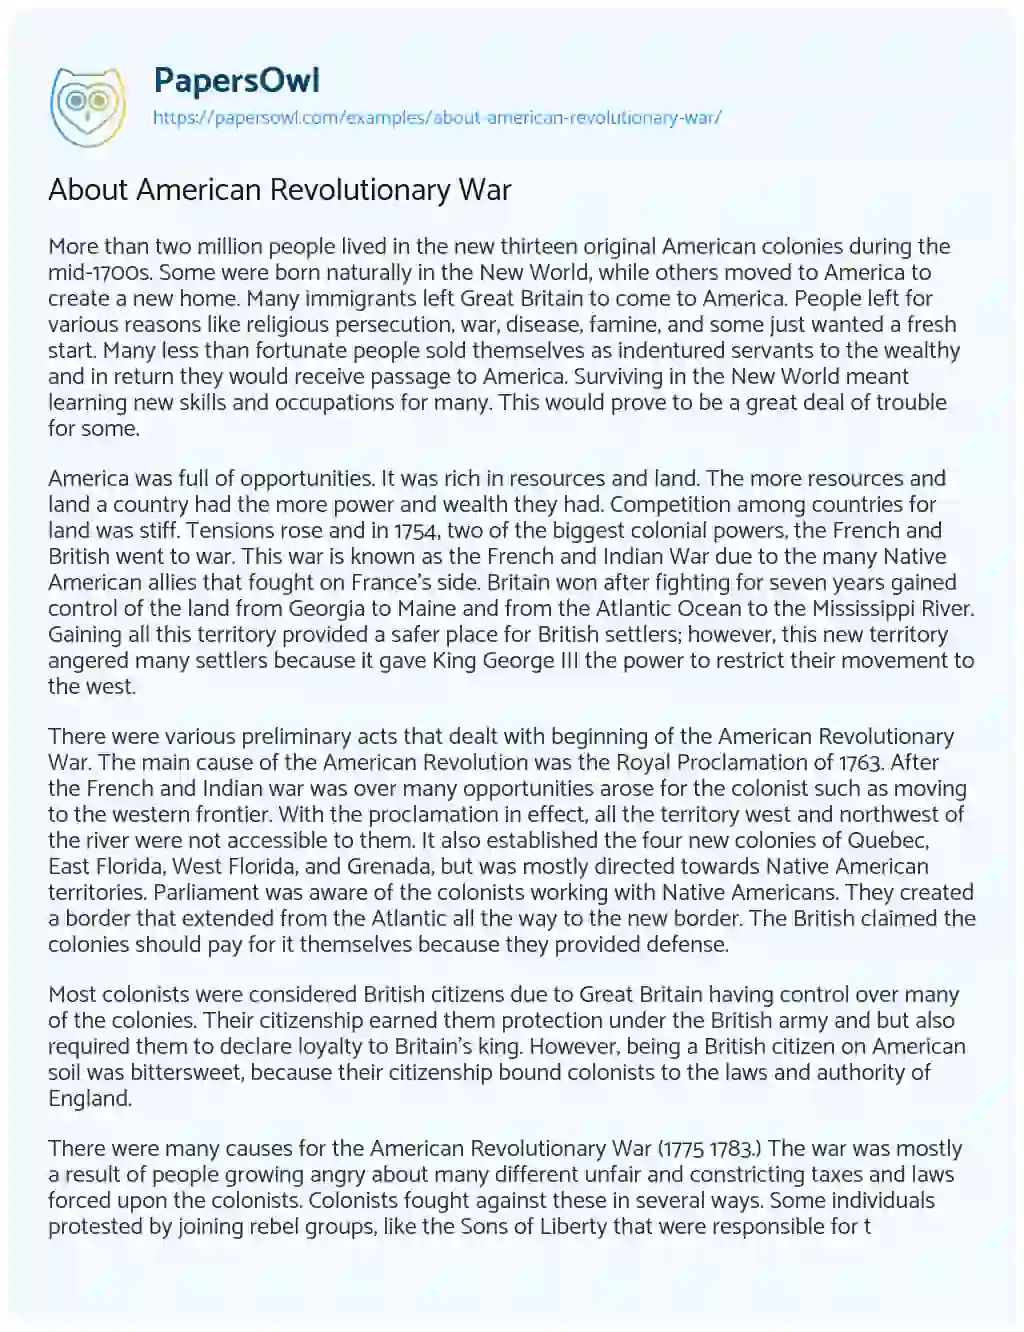 was the revolutionary war really revolutionary essay